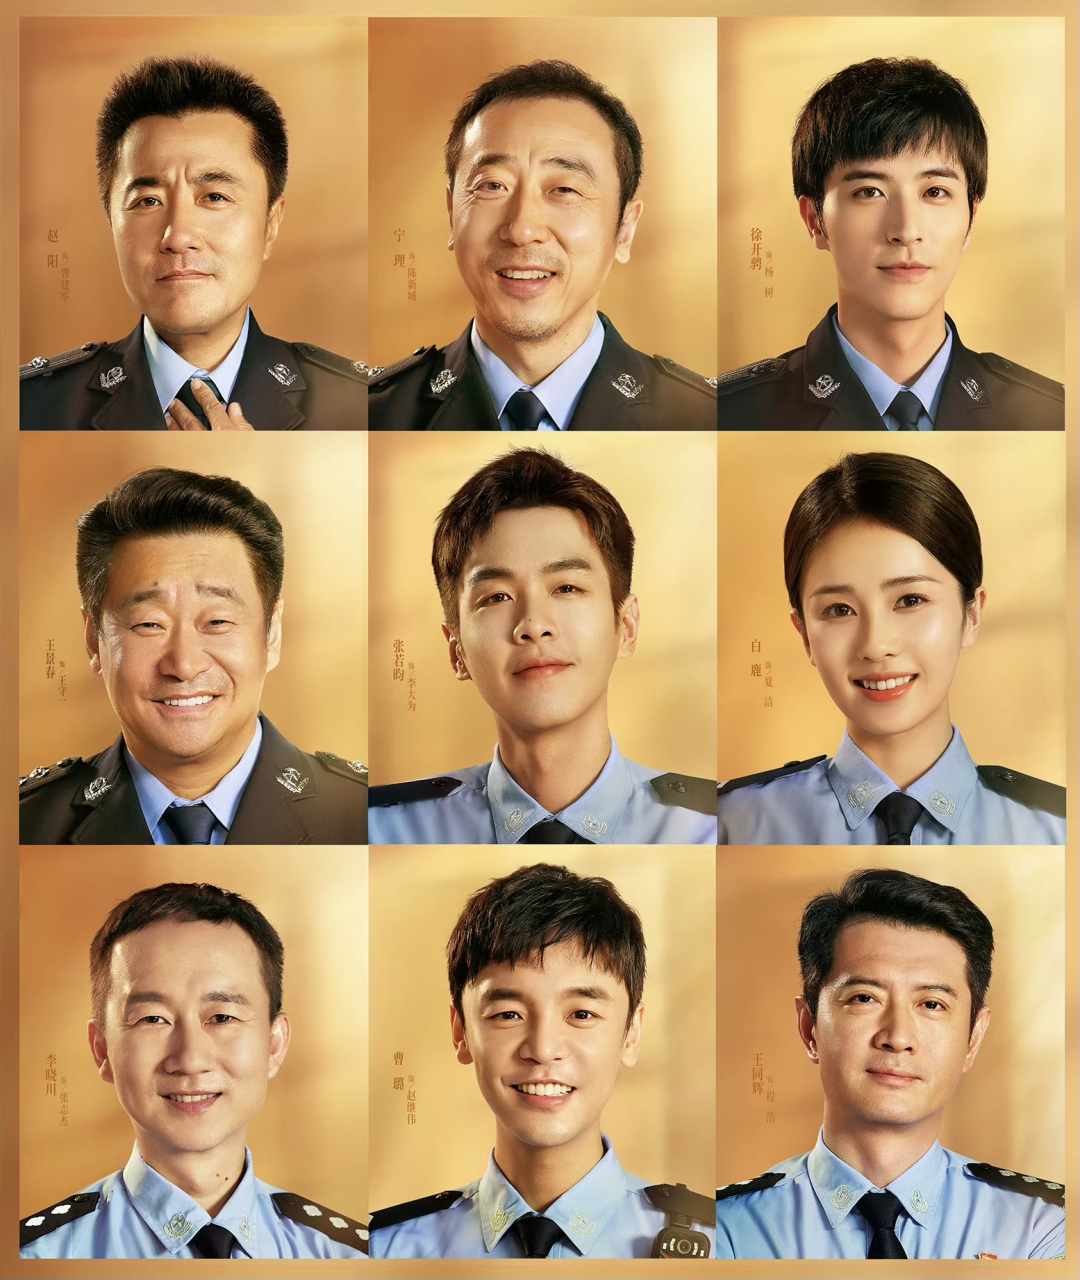 《警察荣誉》是一部以警察为主题的电视剧,由张若昀,白鹿,王景春等人